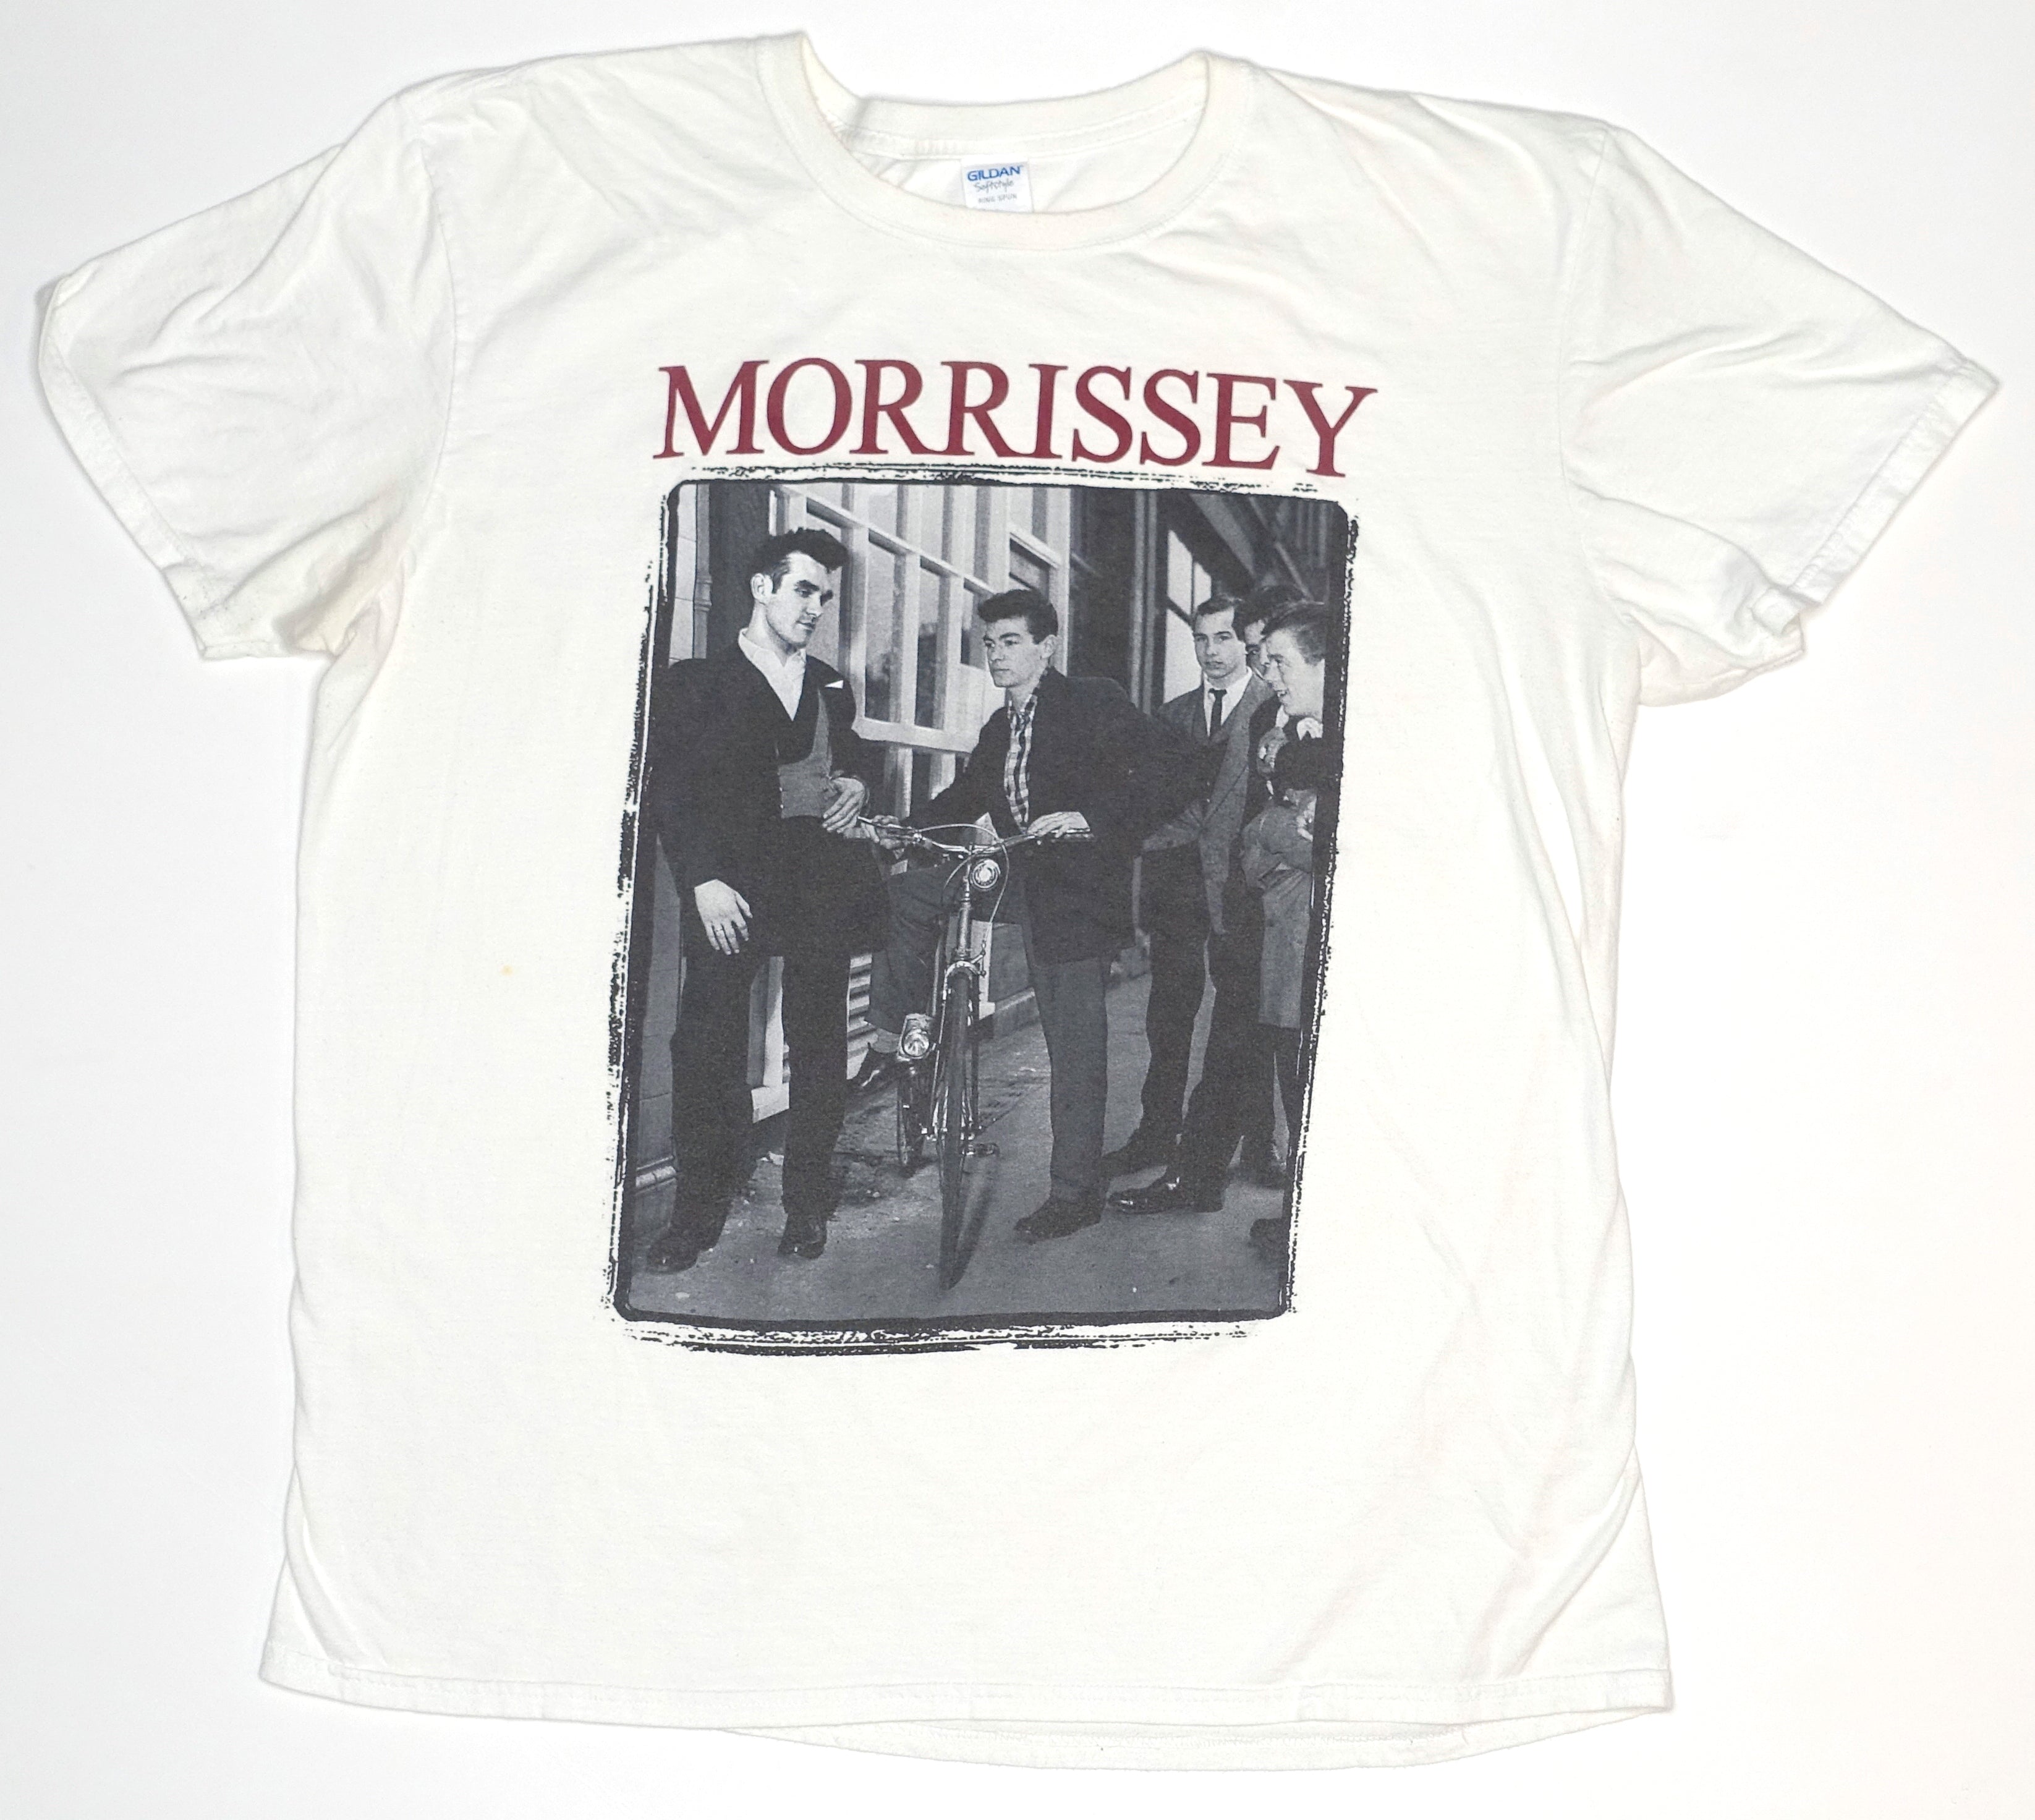 Morrissey - Teddy Boys Tour Shirt Size XL